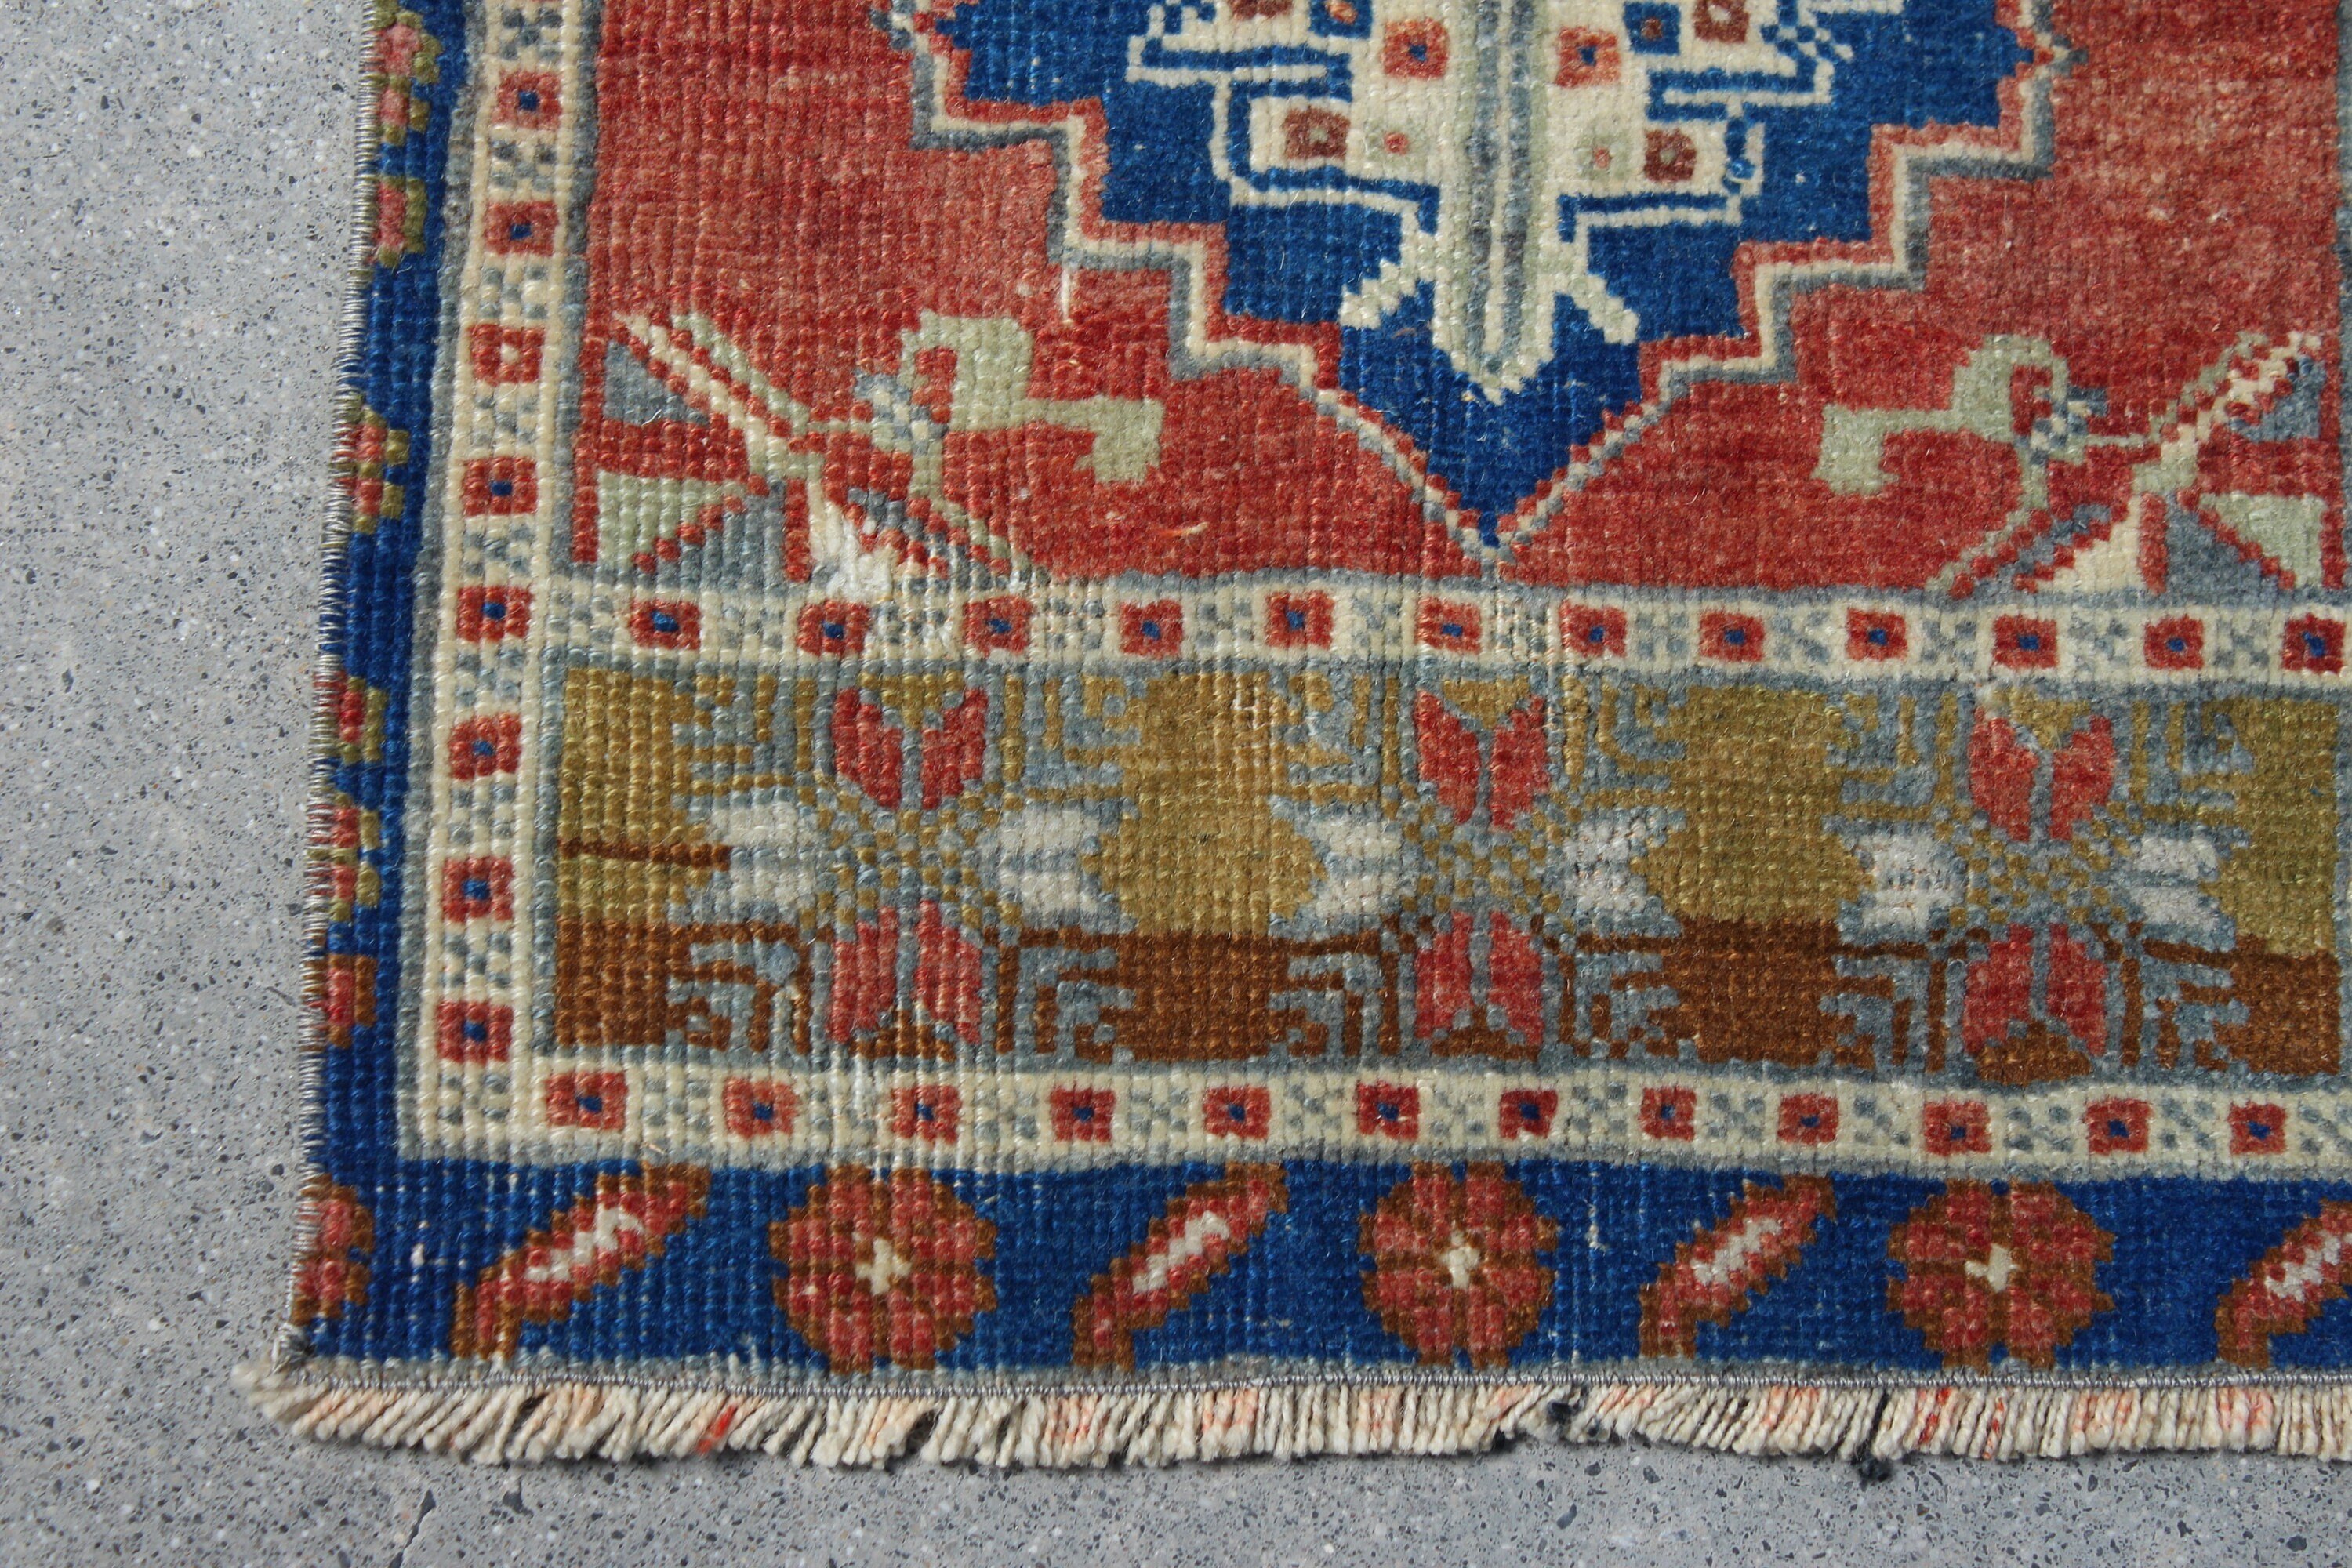 Turkish Rugs, Oushak Rugs, Nursery Rugs, Moroccan Rug, 1.3x2.9 ft Small Rug, Entry Rug, Brown Wool Rugs, Vintage Rug, Rugs for Bedroom